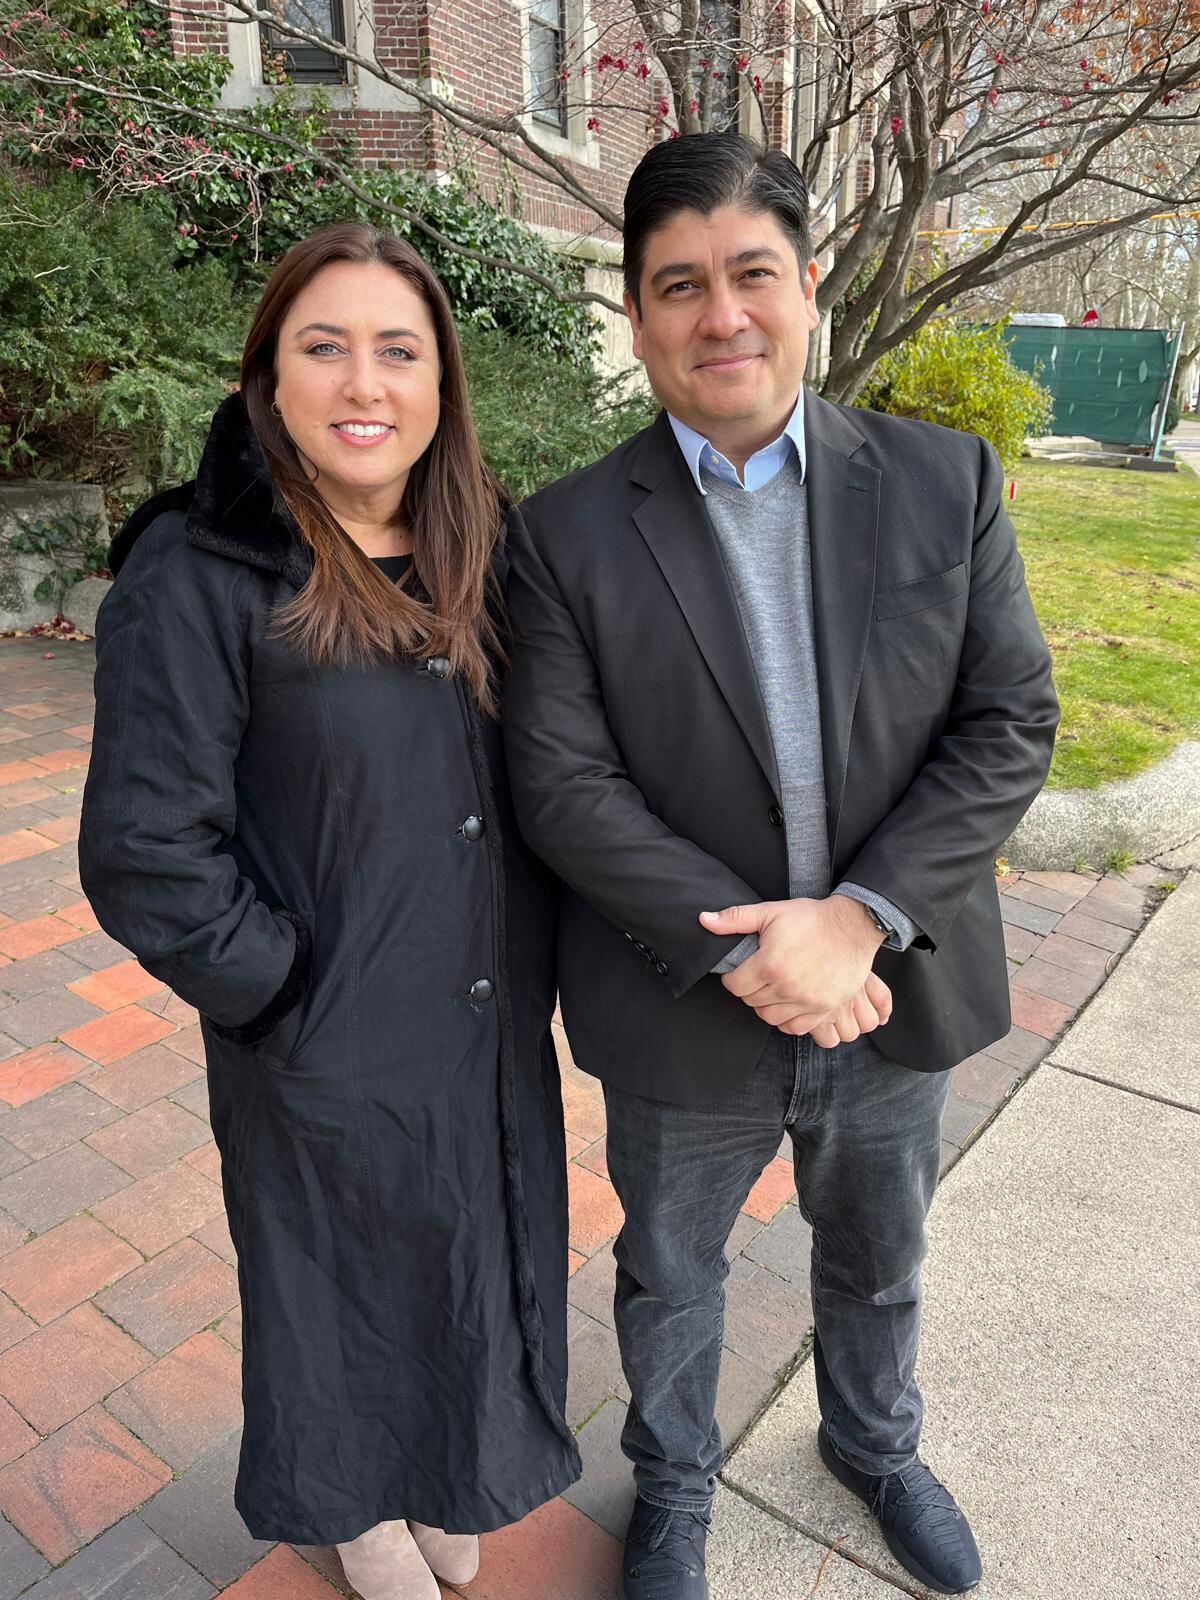 Myriam Masihy entrevistó al expresidente Carlos Alvarado, quien actualmente radica en Boston, Estados Unidos. Foto: Cortesía Telemundo